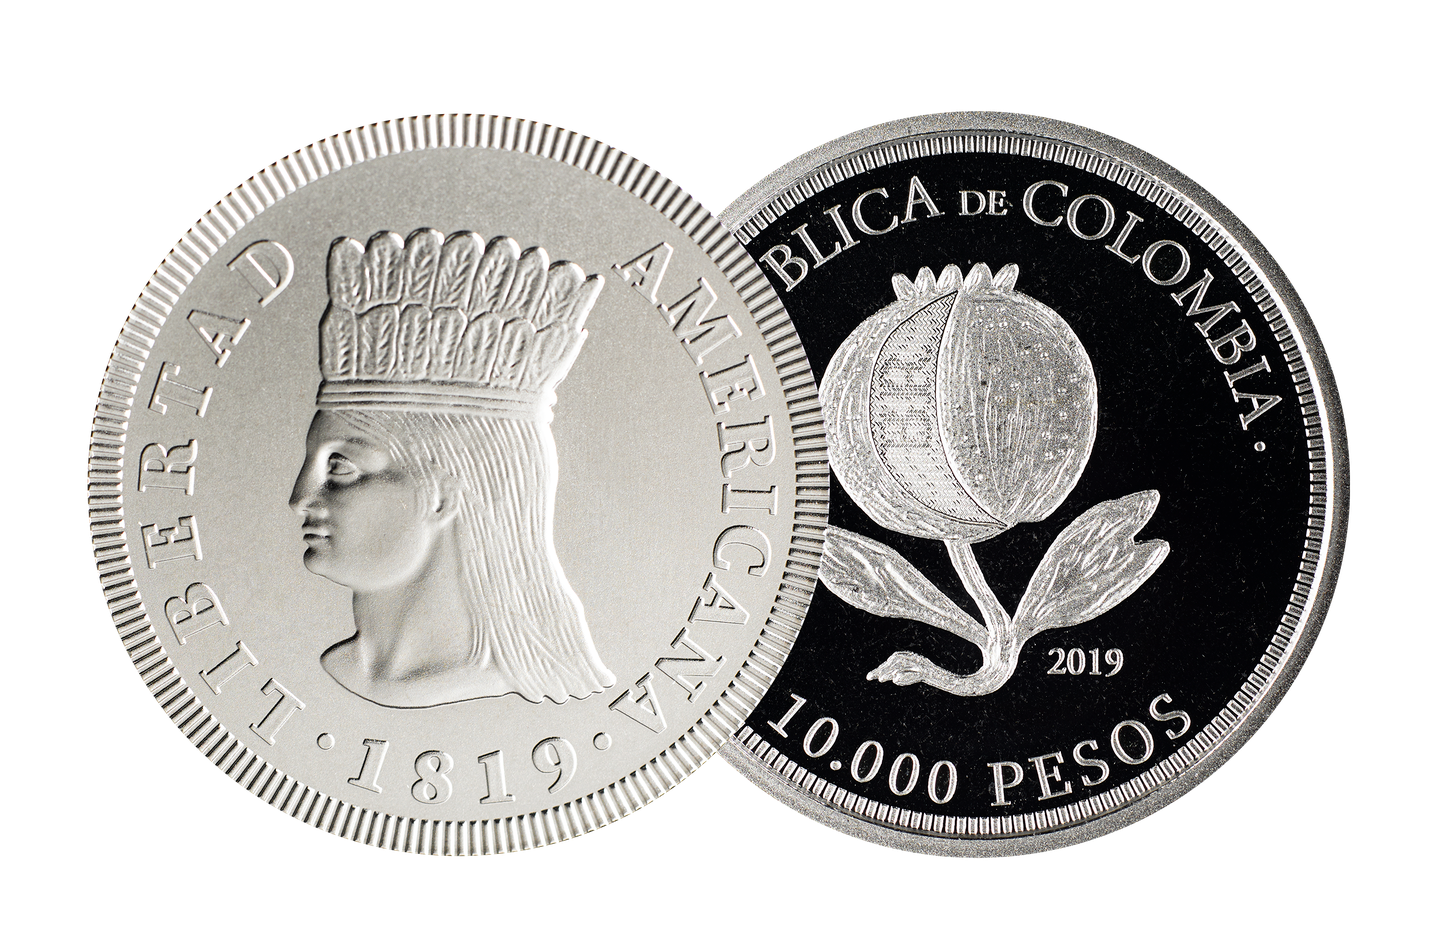 Moneda conmemorativa del Bicentenario ya circula en Colombia, ¿cómo obtenerla?